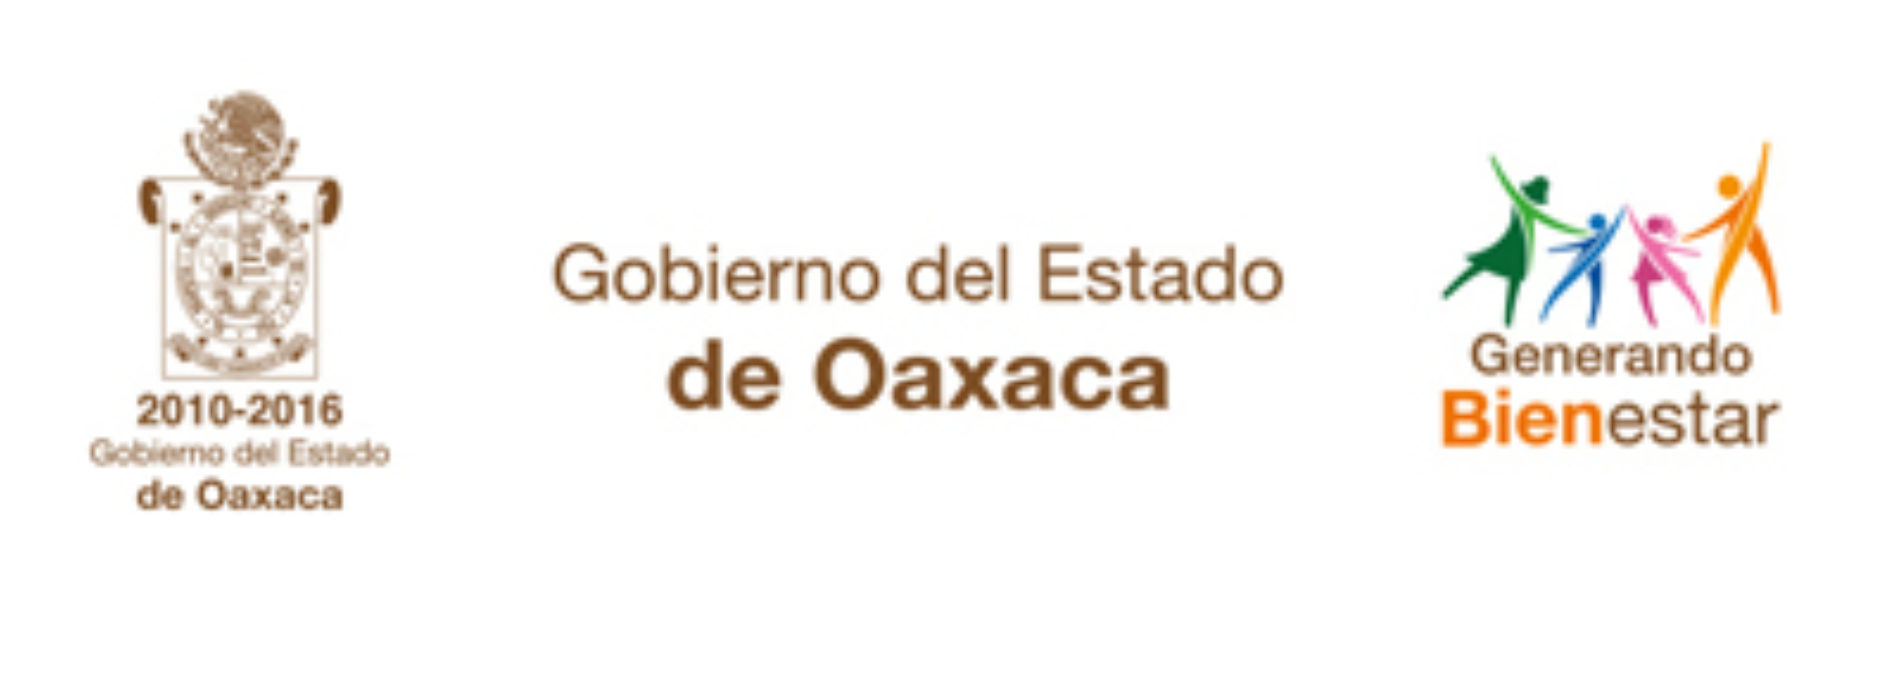 Reconoce CANIRAC Delegación Oaxaca actuación de los gobiernos Estatal y Federal para restablecer la paz y el orden en Oaxaca